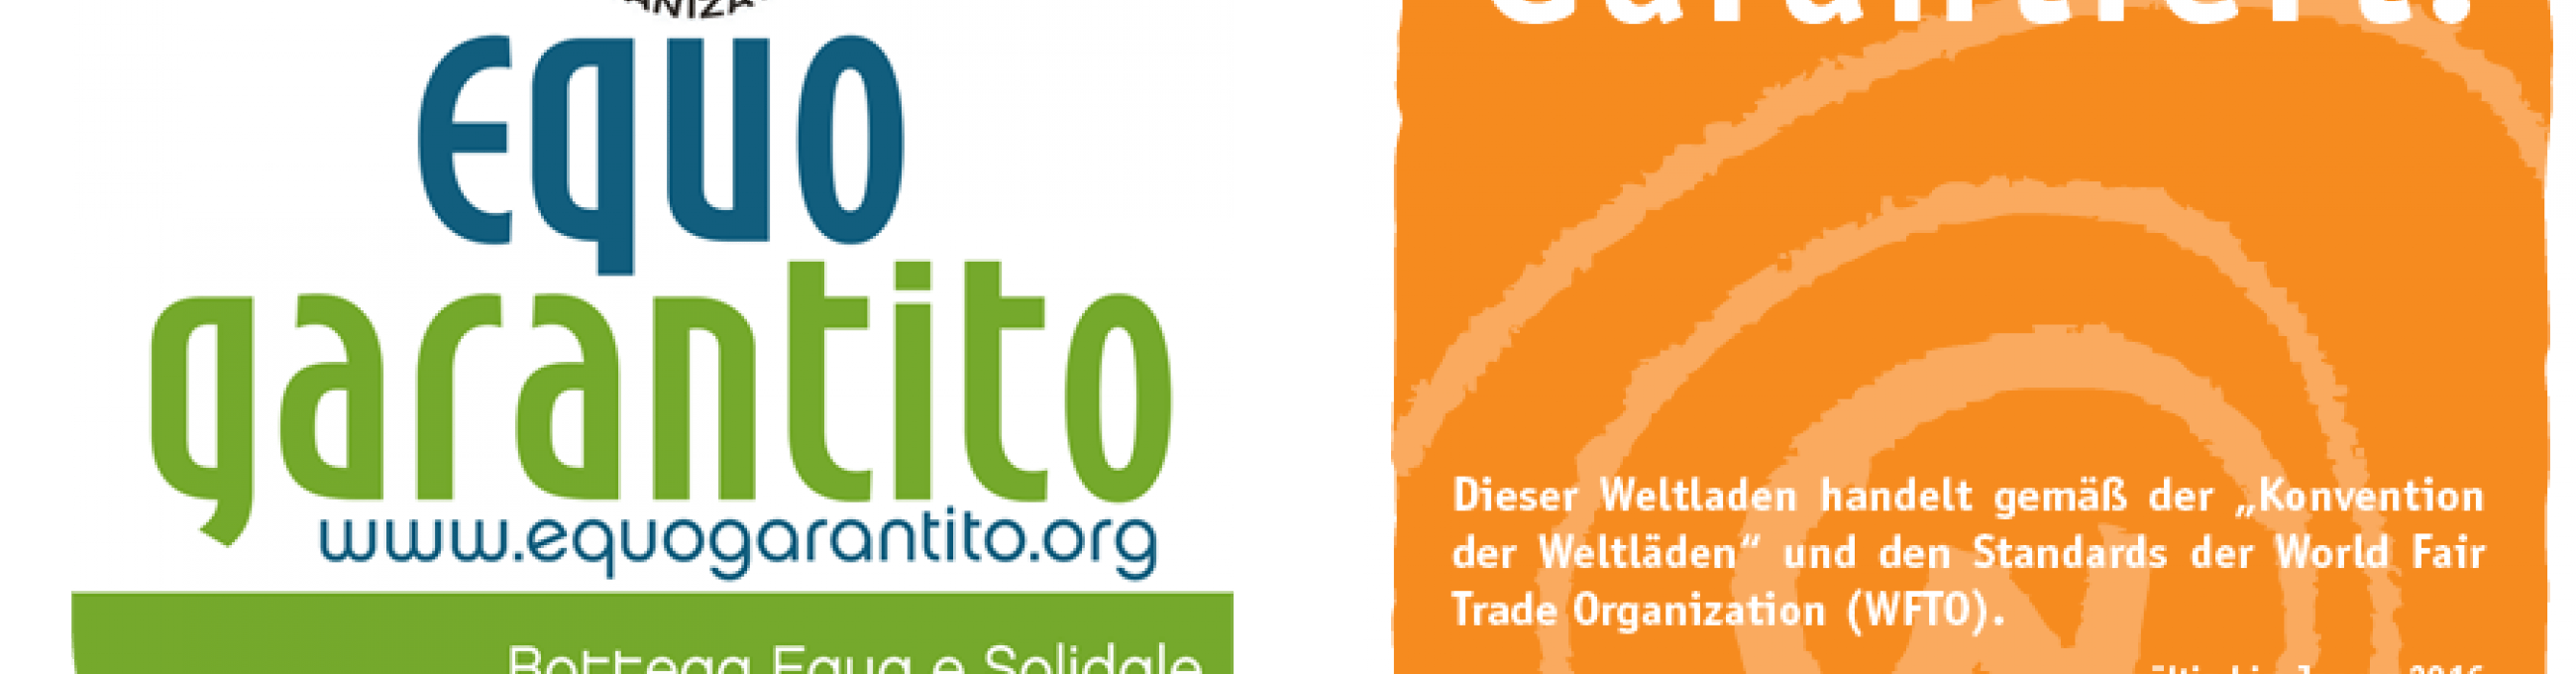 Retailer Logo - Fair Trade Retailer Logo For Italian and German Shops Signed | World ...